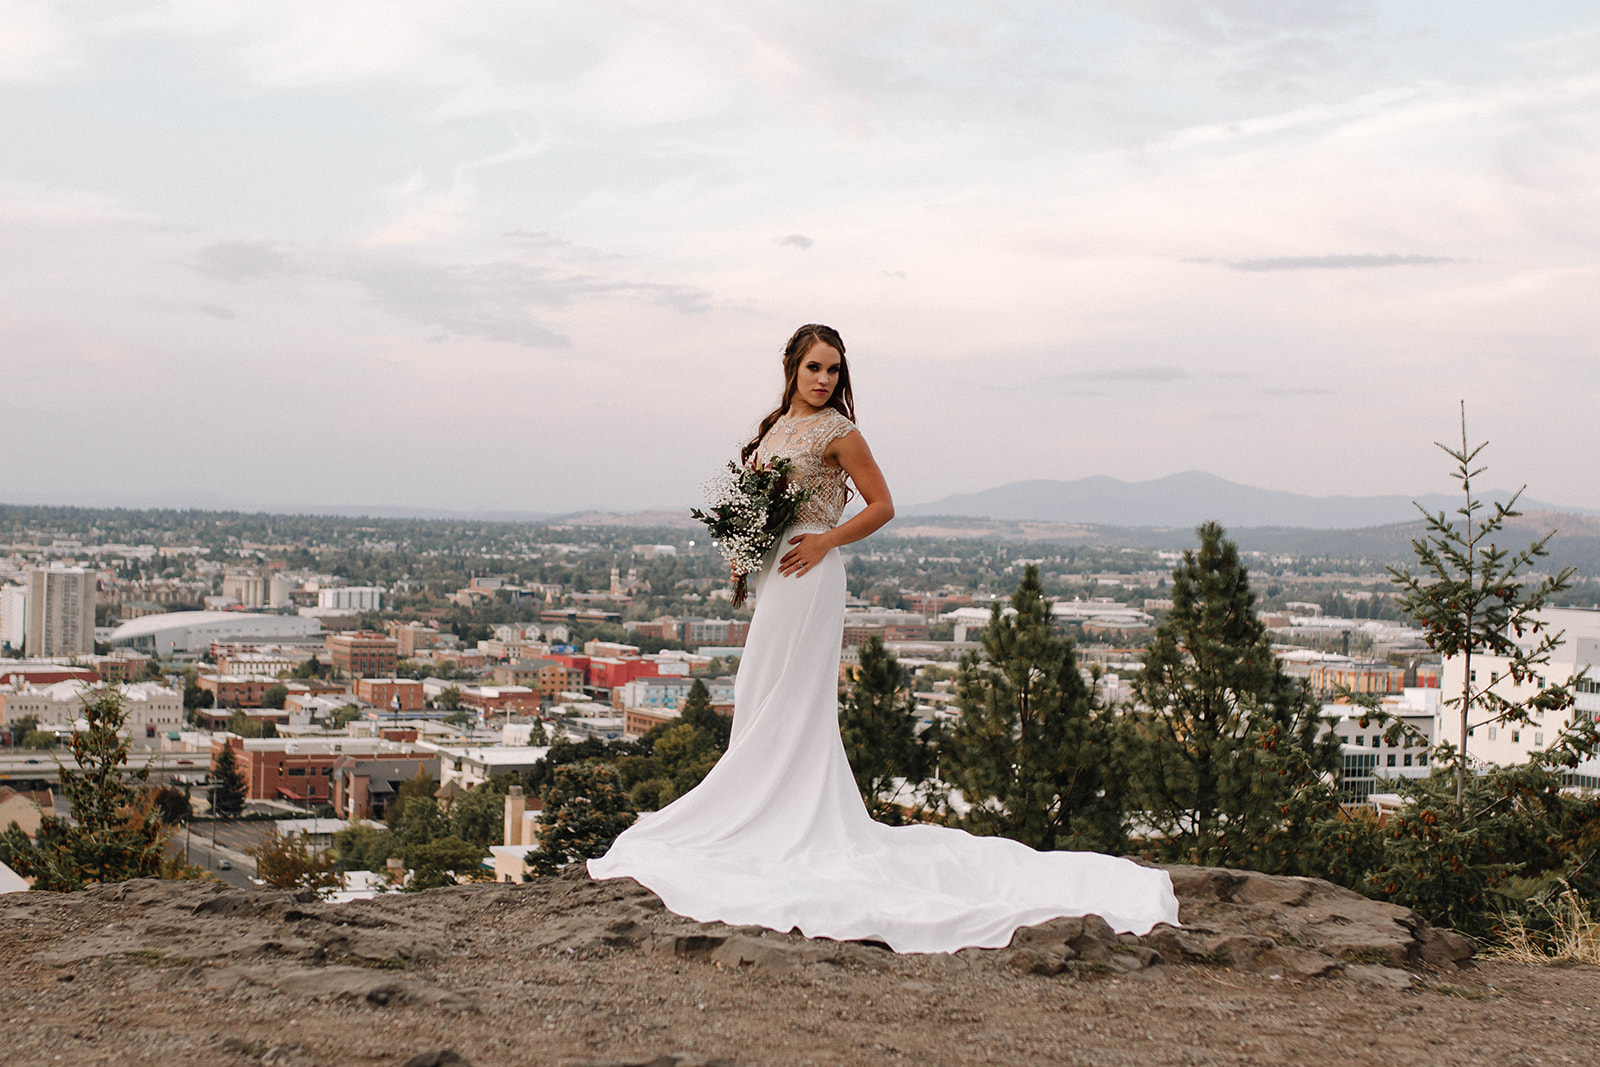 Spokane wedding dress image 12